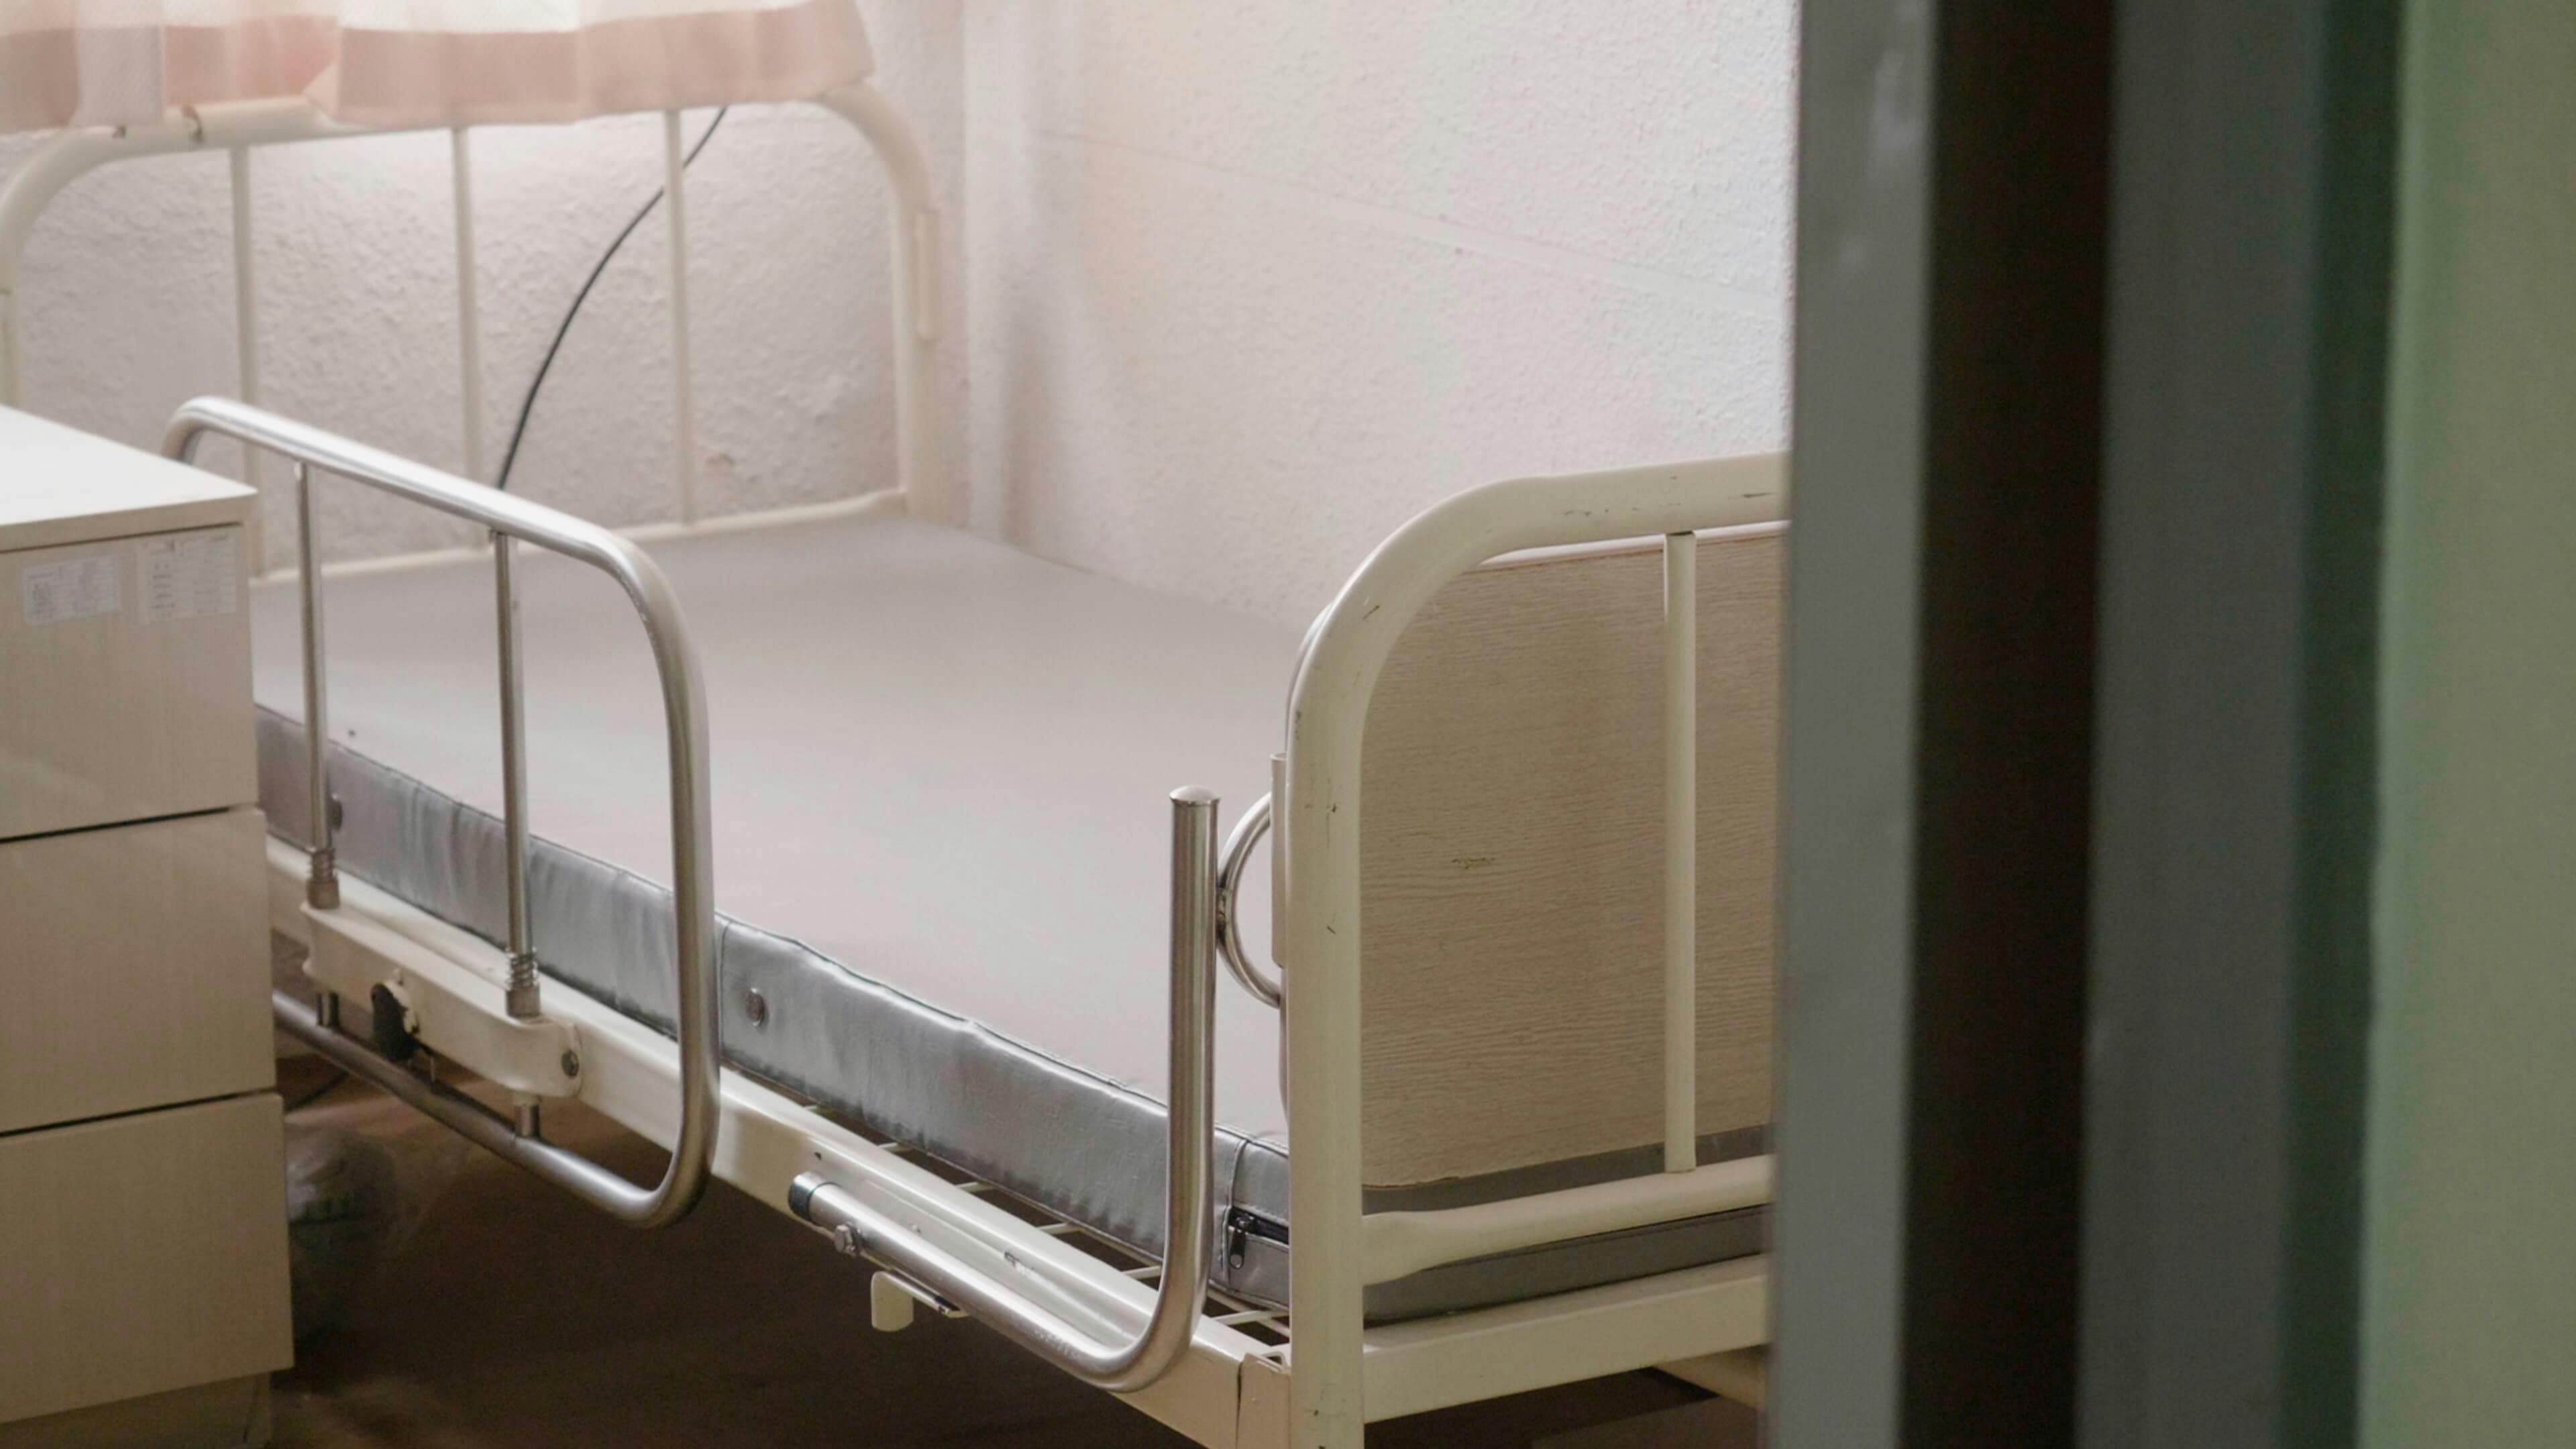 침대가 있는 방은 앉지 못하는 와상환자들이 주로 사용했다.